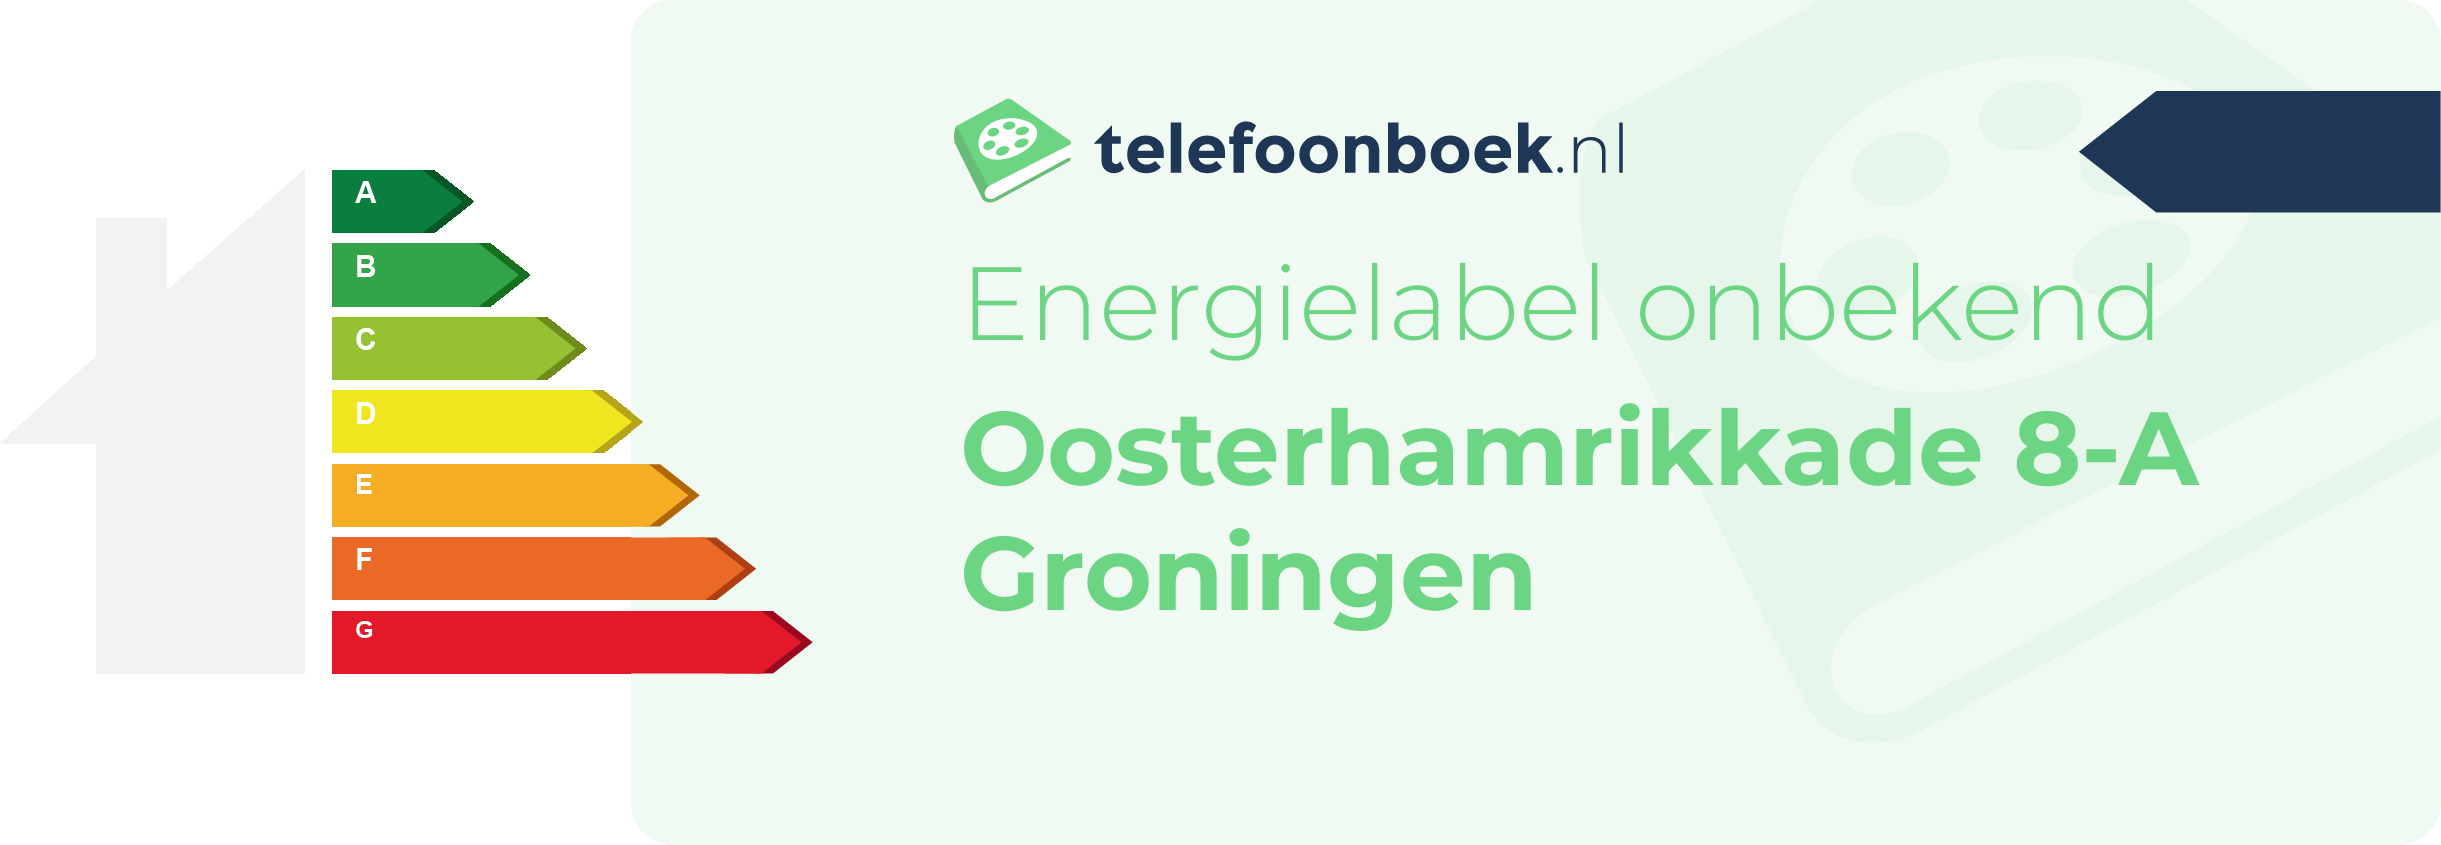 Energielabel Oosterhamrikkade 8-A Groningen